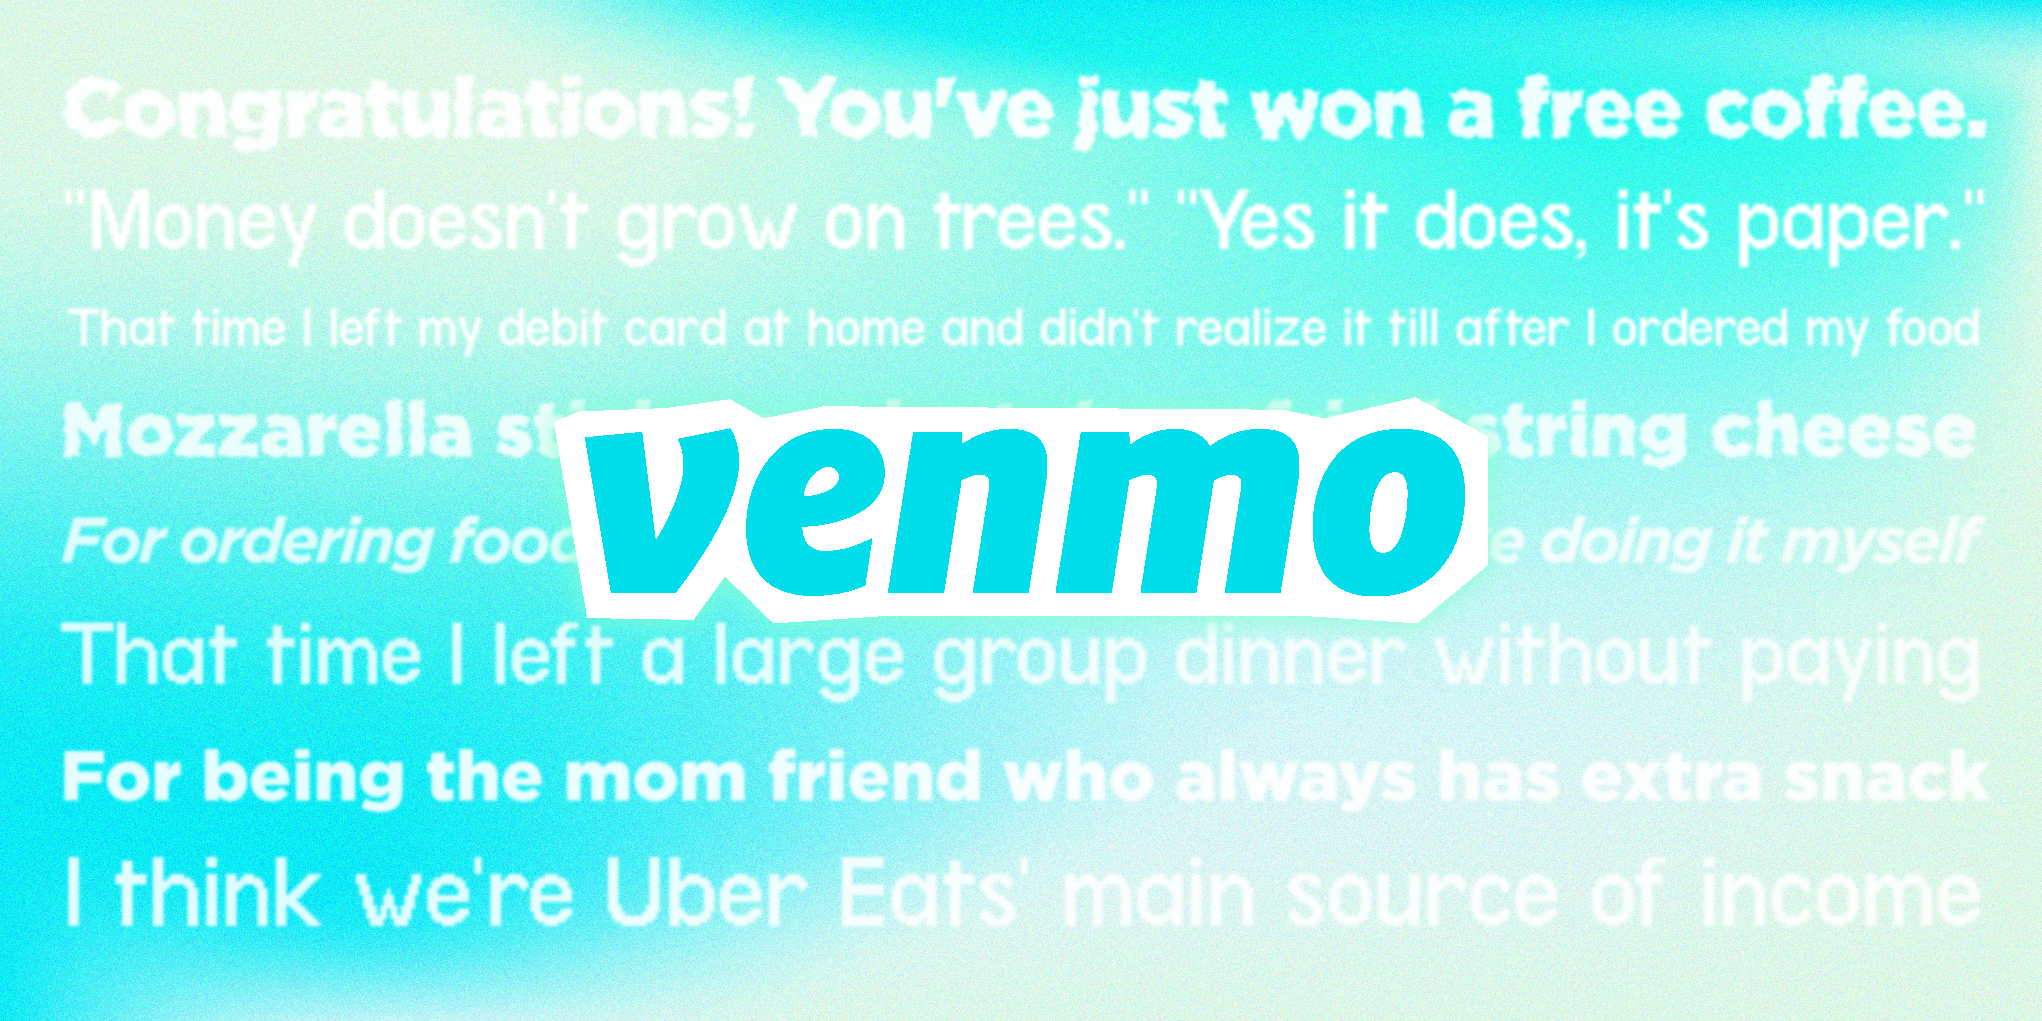 72 Funny Venmo Captions - Funny Venmo Captions for Friends